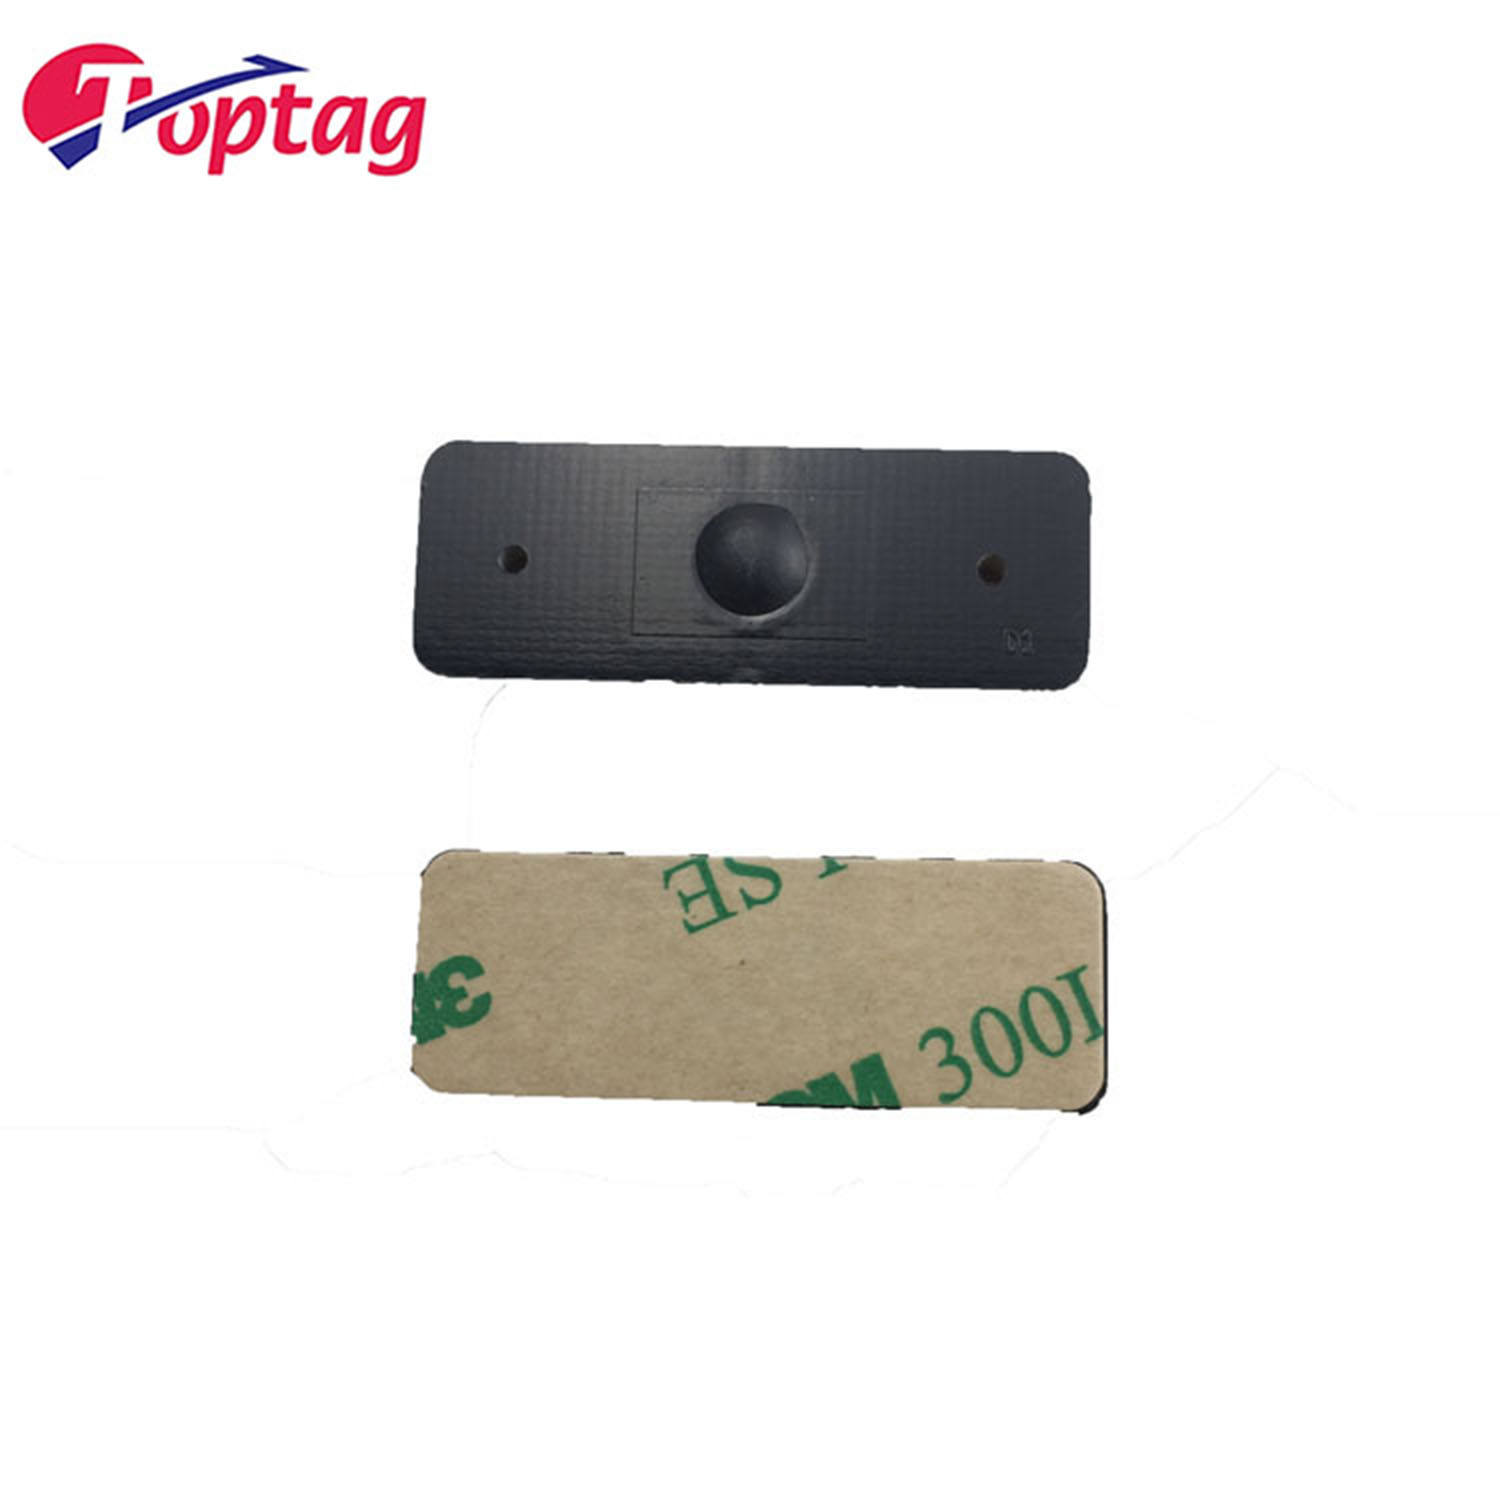 Toptag 860-960mhz Long Range PCB RFID UHF Anti-metal Tag Heat-resistant Mini Tag